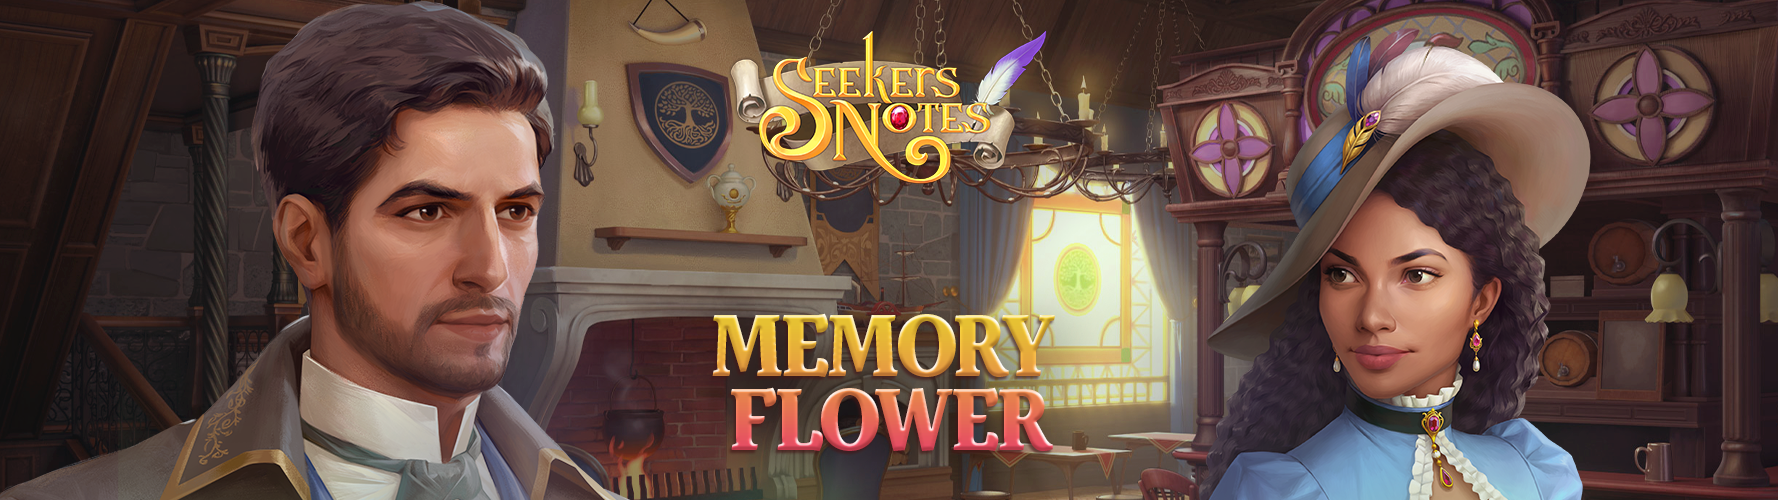 Seekers Notes. Update 2.4: Memory Flower